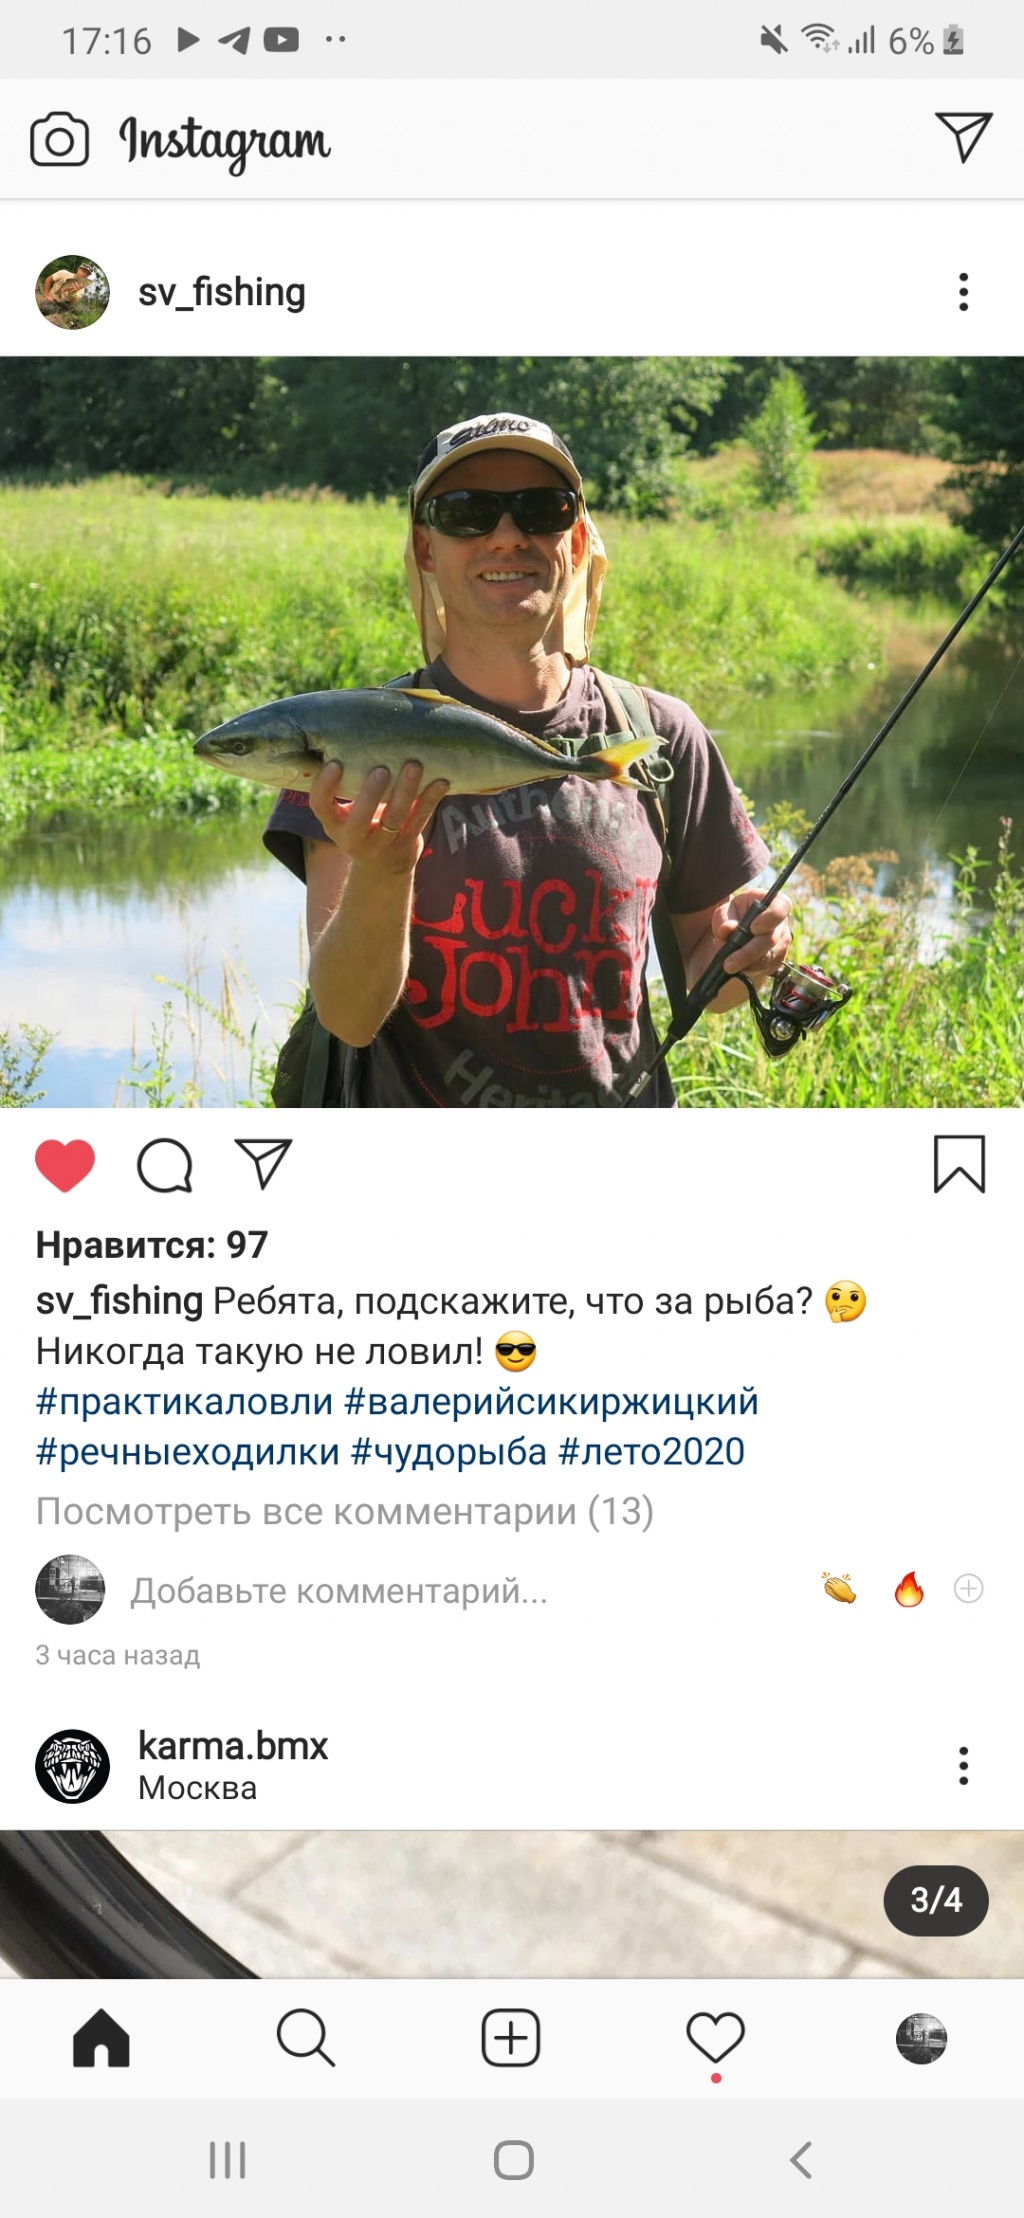 Кирилл из «Солигорск судиловского 3» просит распознать рыбу по фото